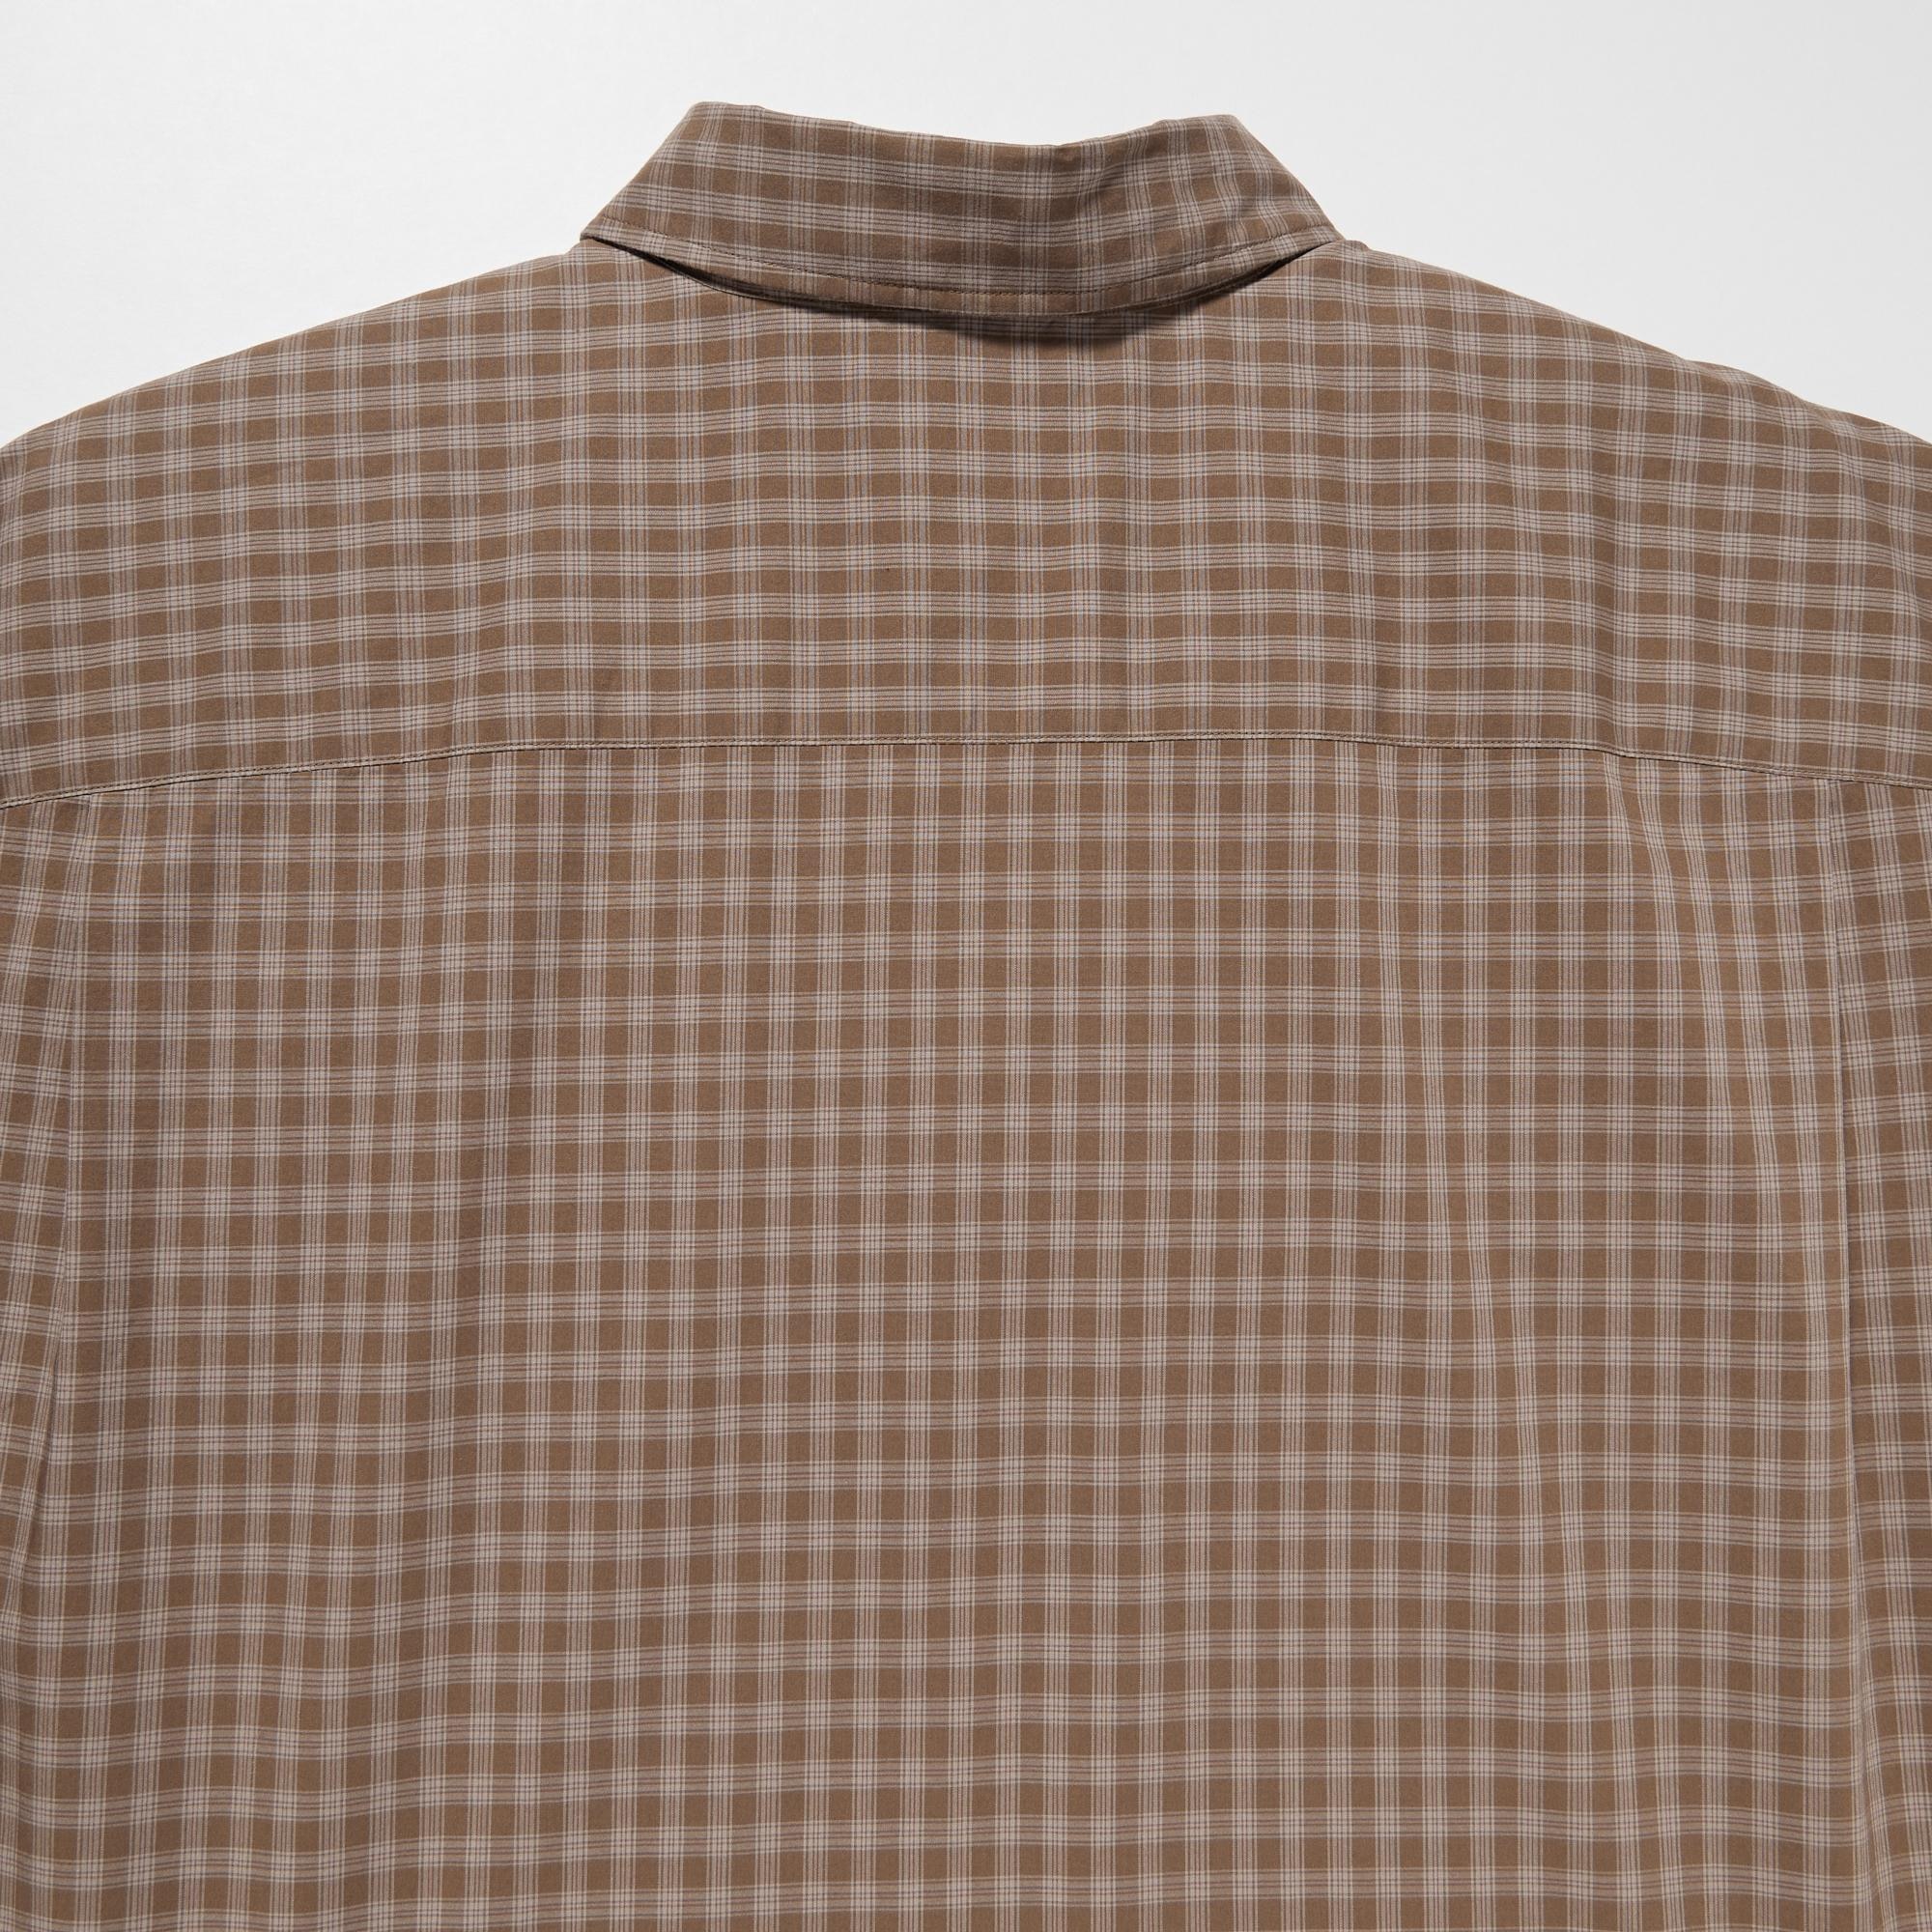 ユニクロU 2023SSオーバーサイズチェックシャツ（長袖）ブラウンXXL 新品